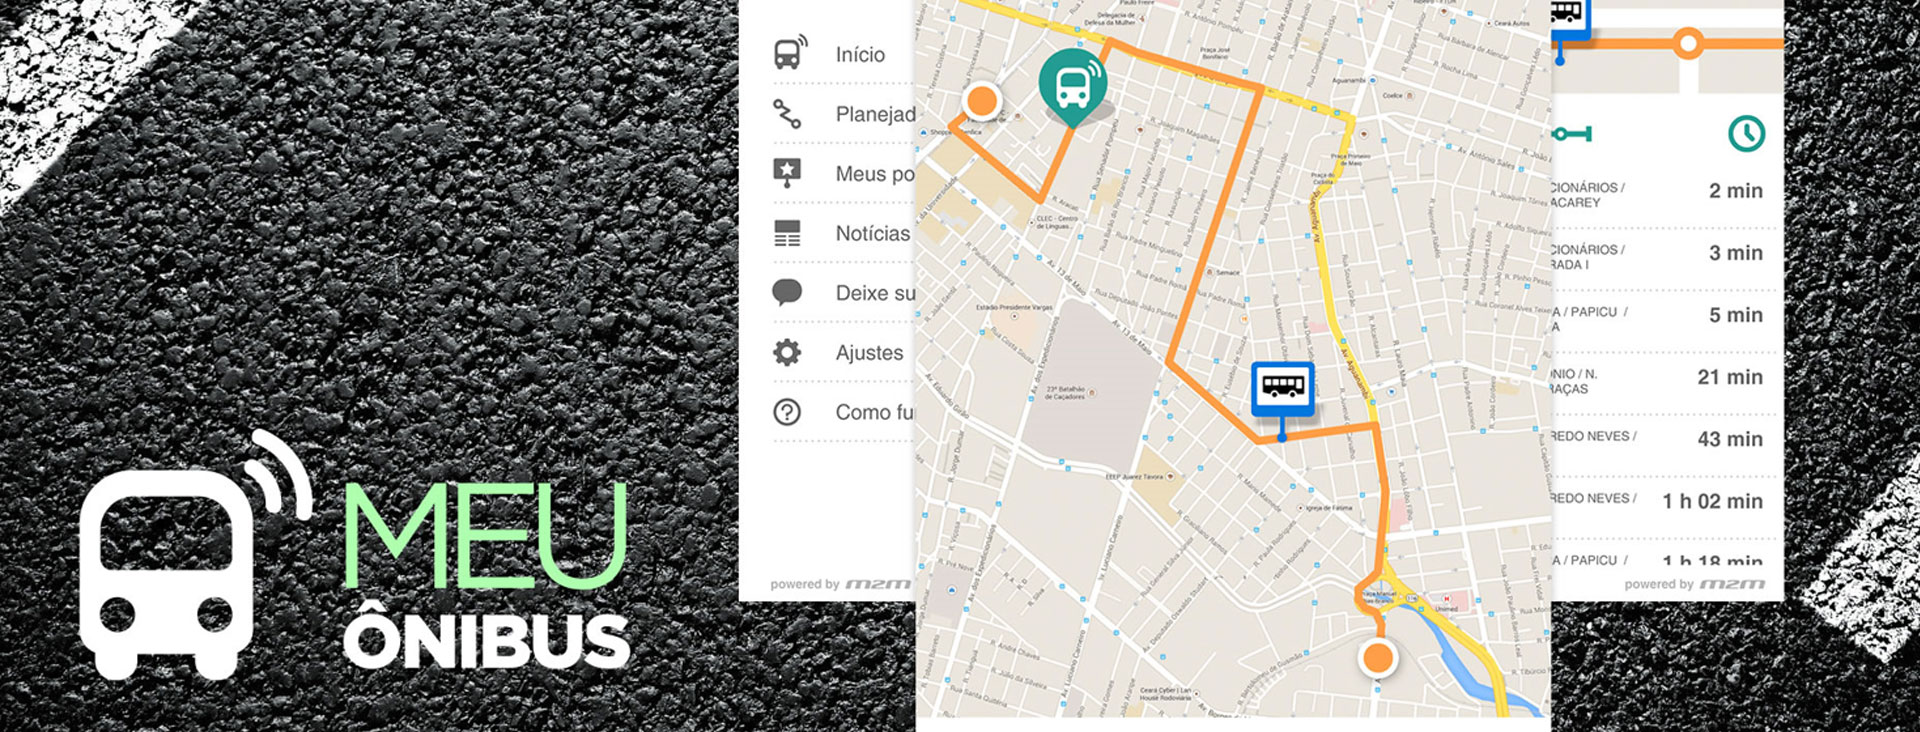 Case App com informações de itinerários de transporte